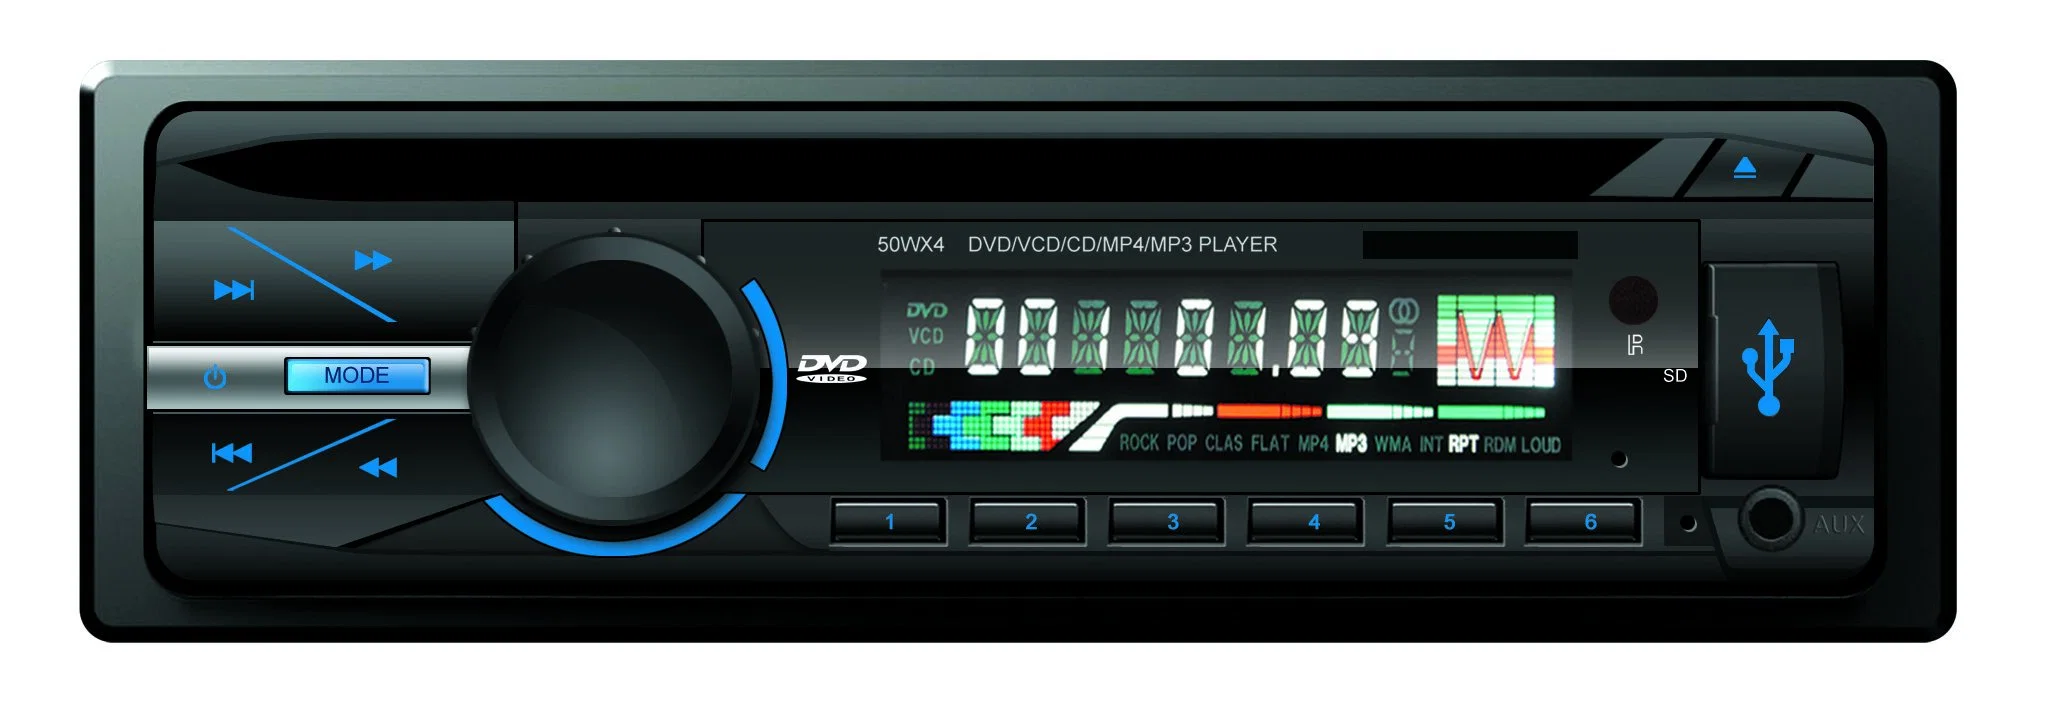 Günstige Preis Univeral 1 DIN Auto CD / DVD-Player mit USB/SD/Aux